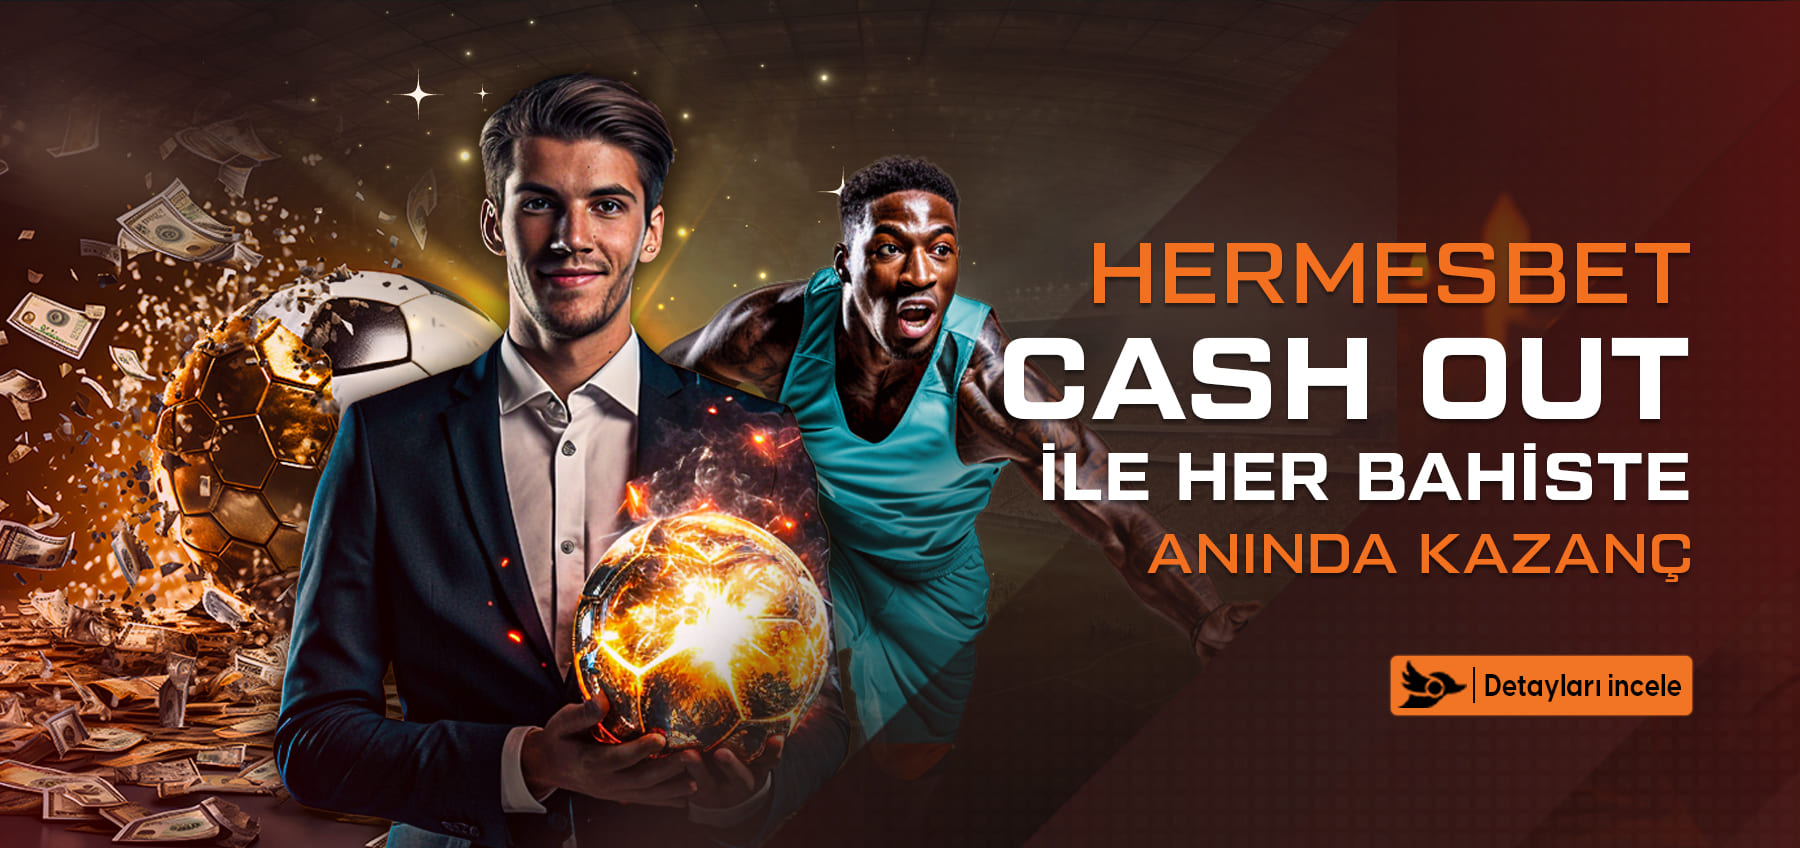 Hermesbet %20 Spor Kayıp Bonusu detayları